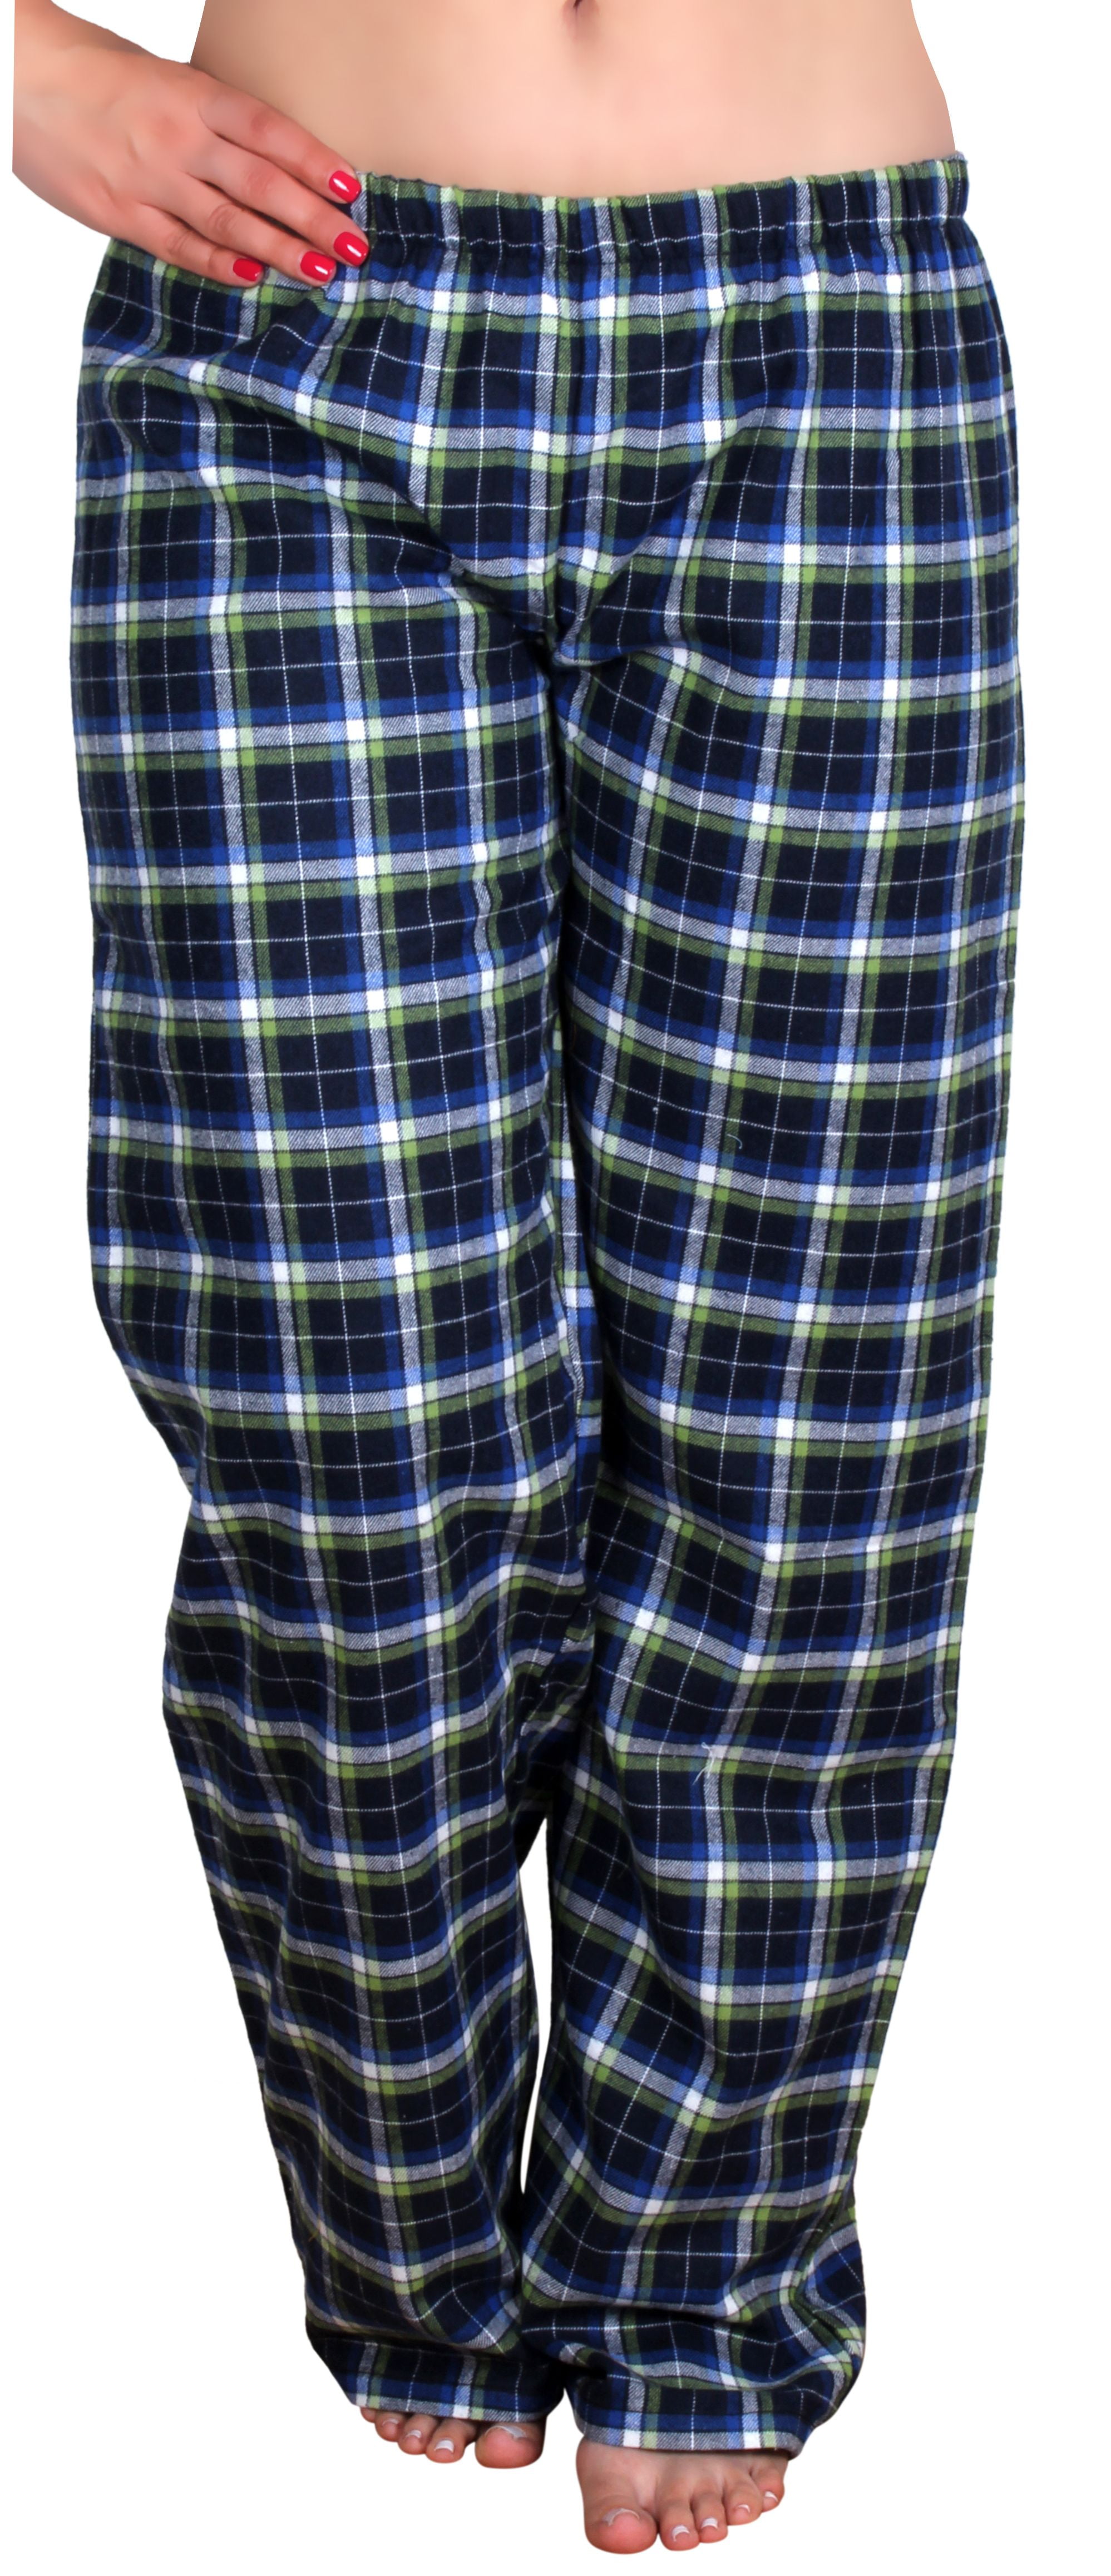 Enimay Women's Cotton Flannel Plaid Pajama Pants LEP-6 Size XL ...